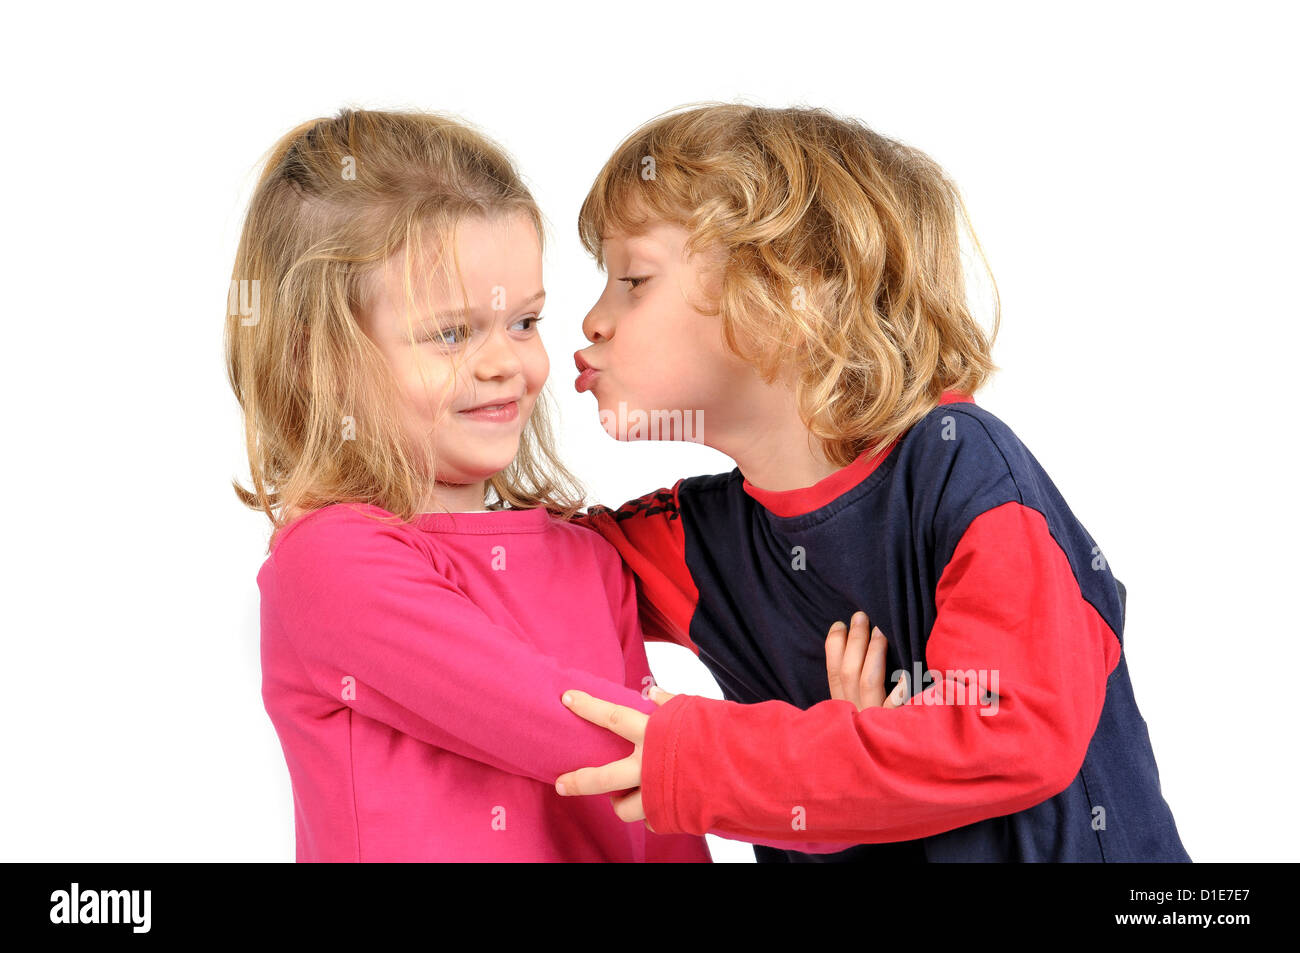 Kleiner Junge Eine Mädchen In Weißen Isoliert Zu Küssen Versucht Stockfotografie Alamy 